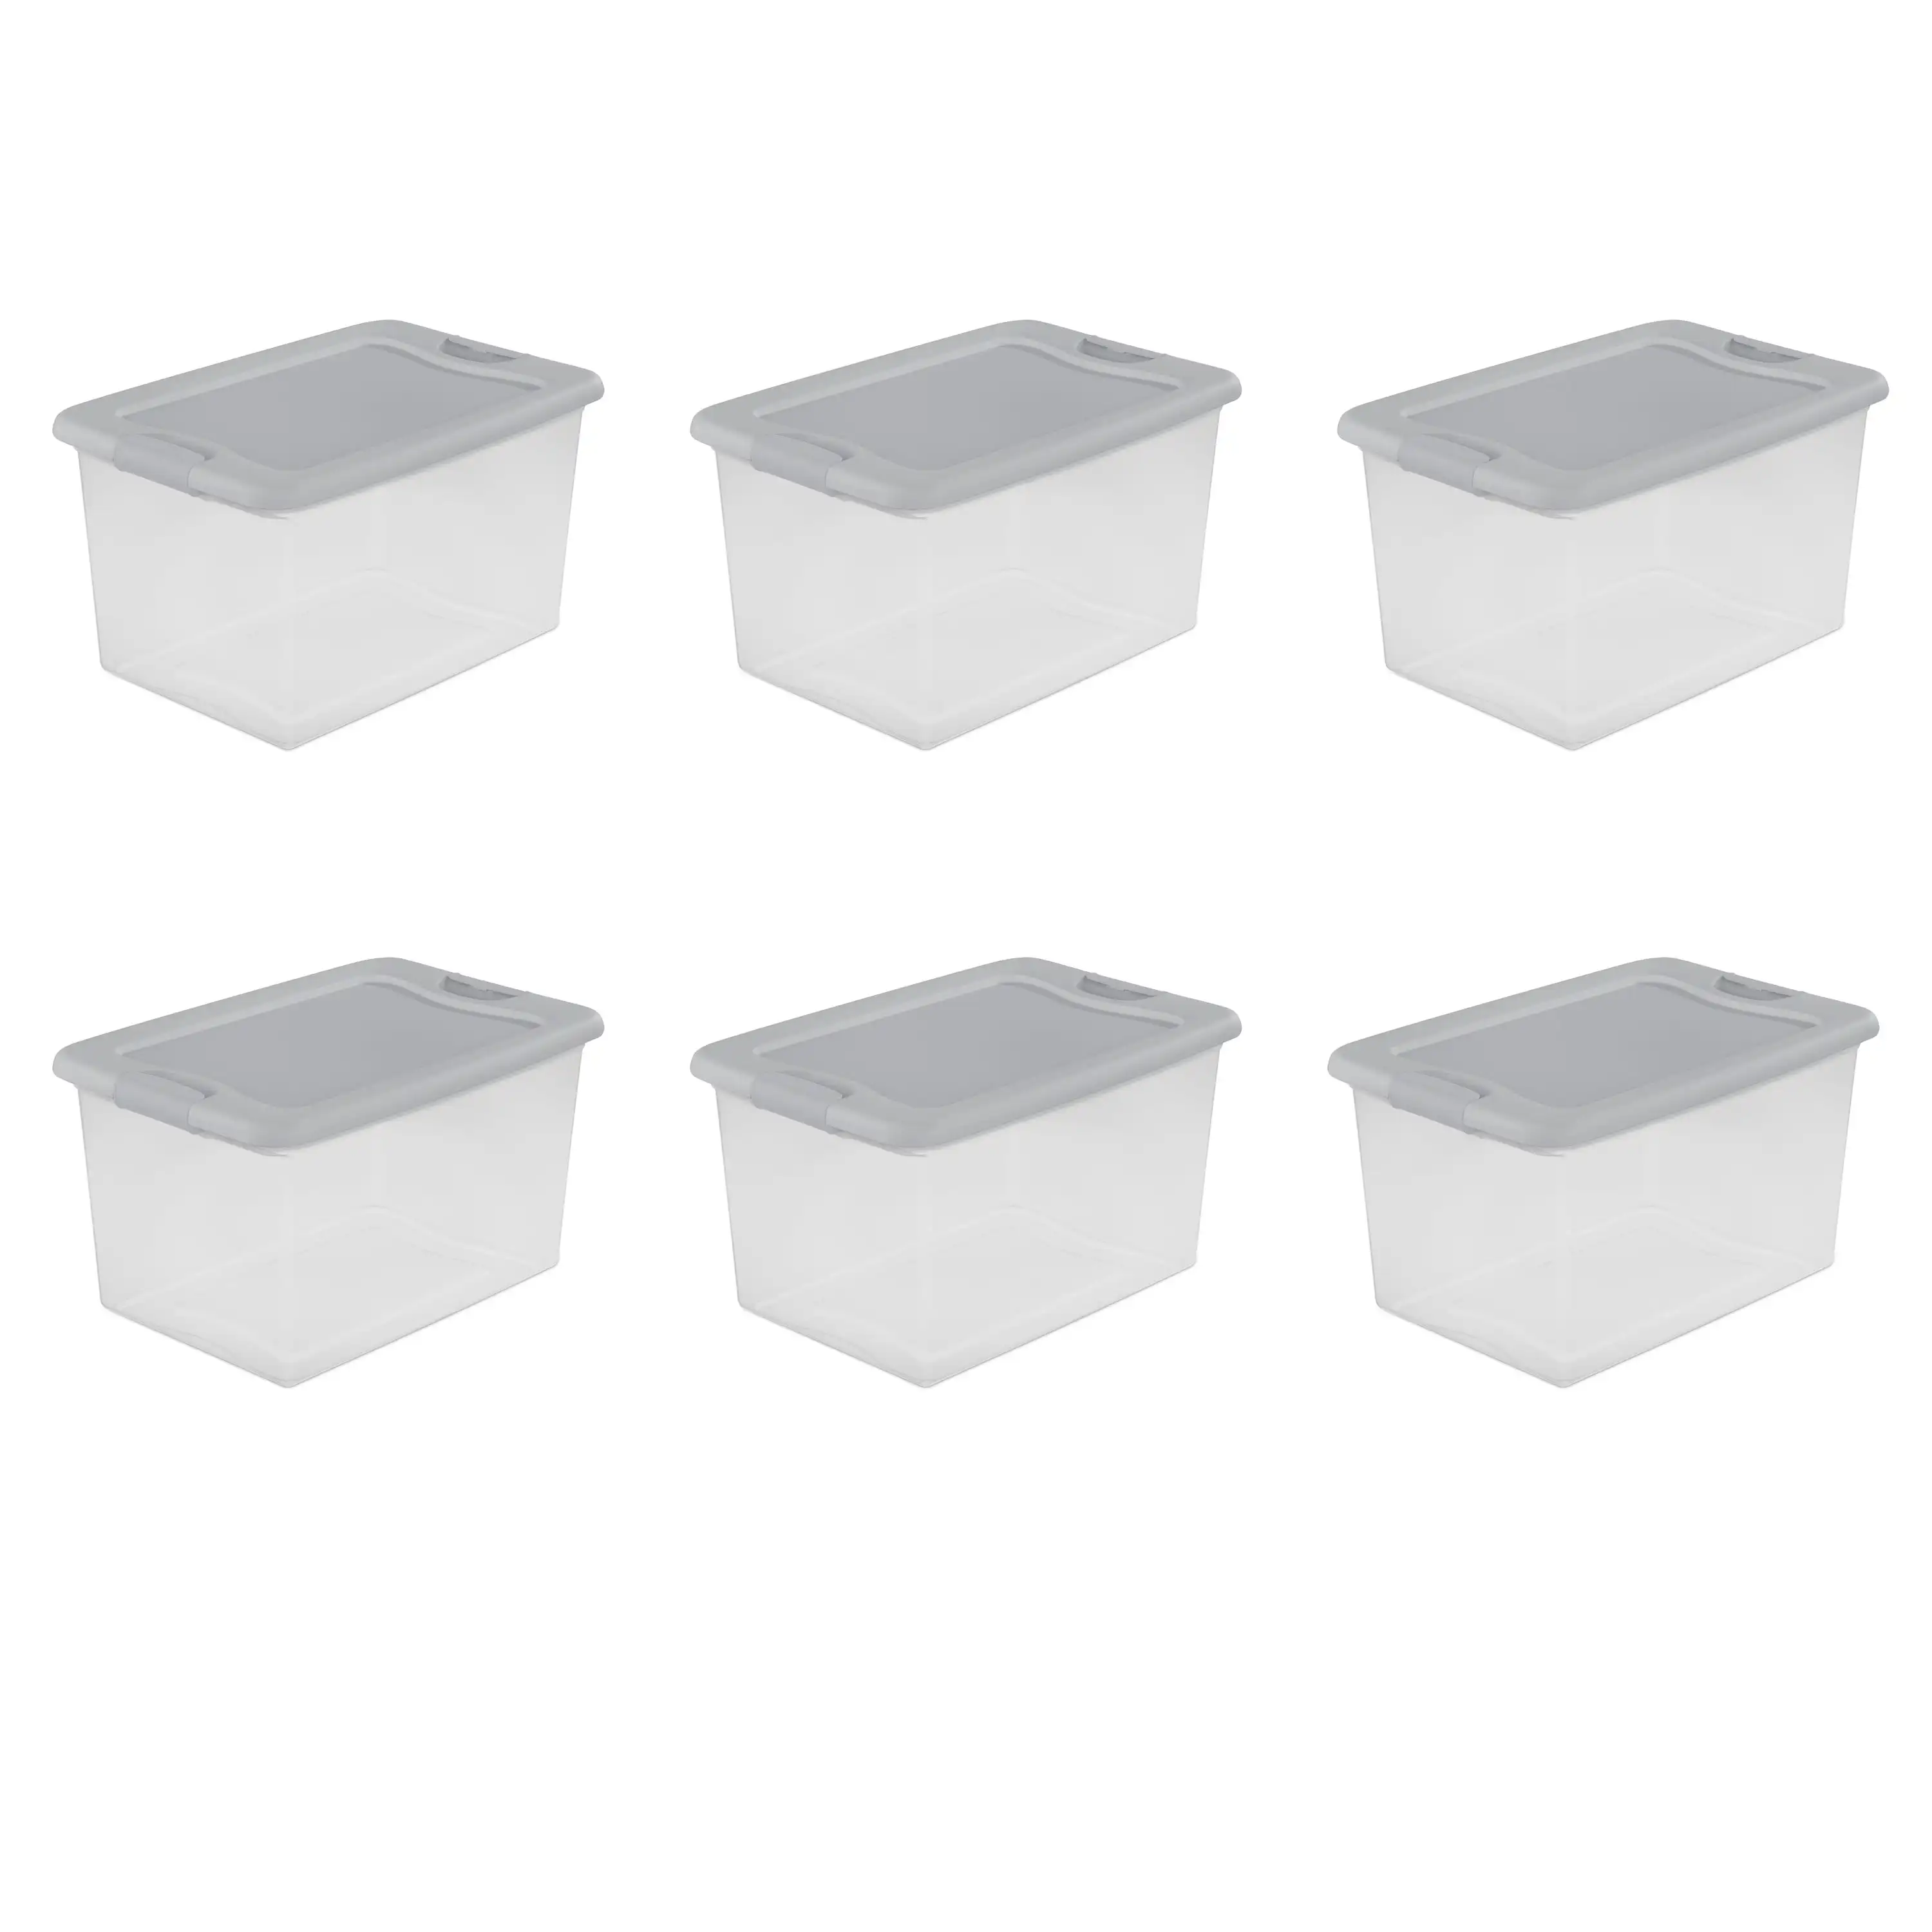 Sterilite 64 qt Latching Box White Set of 6